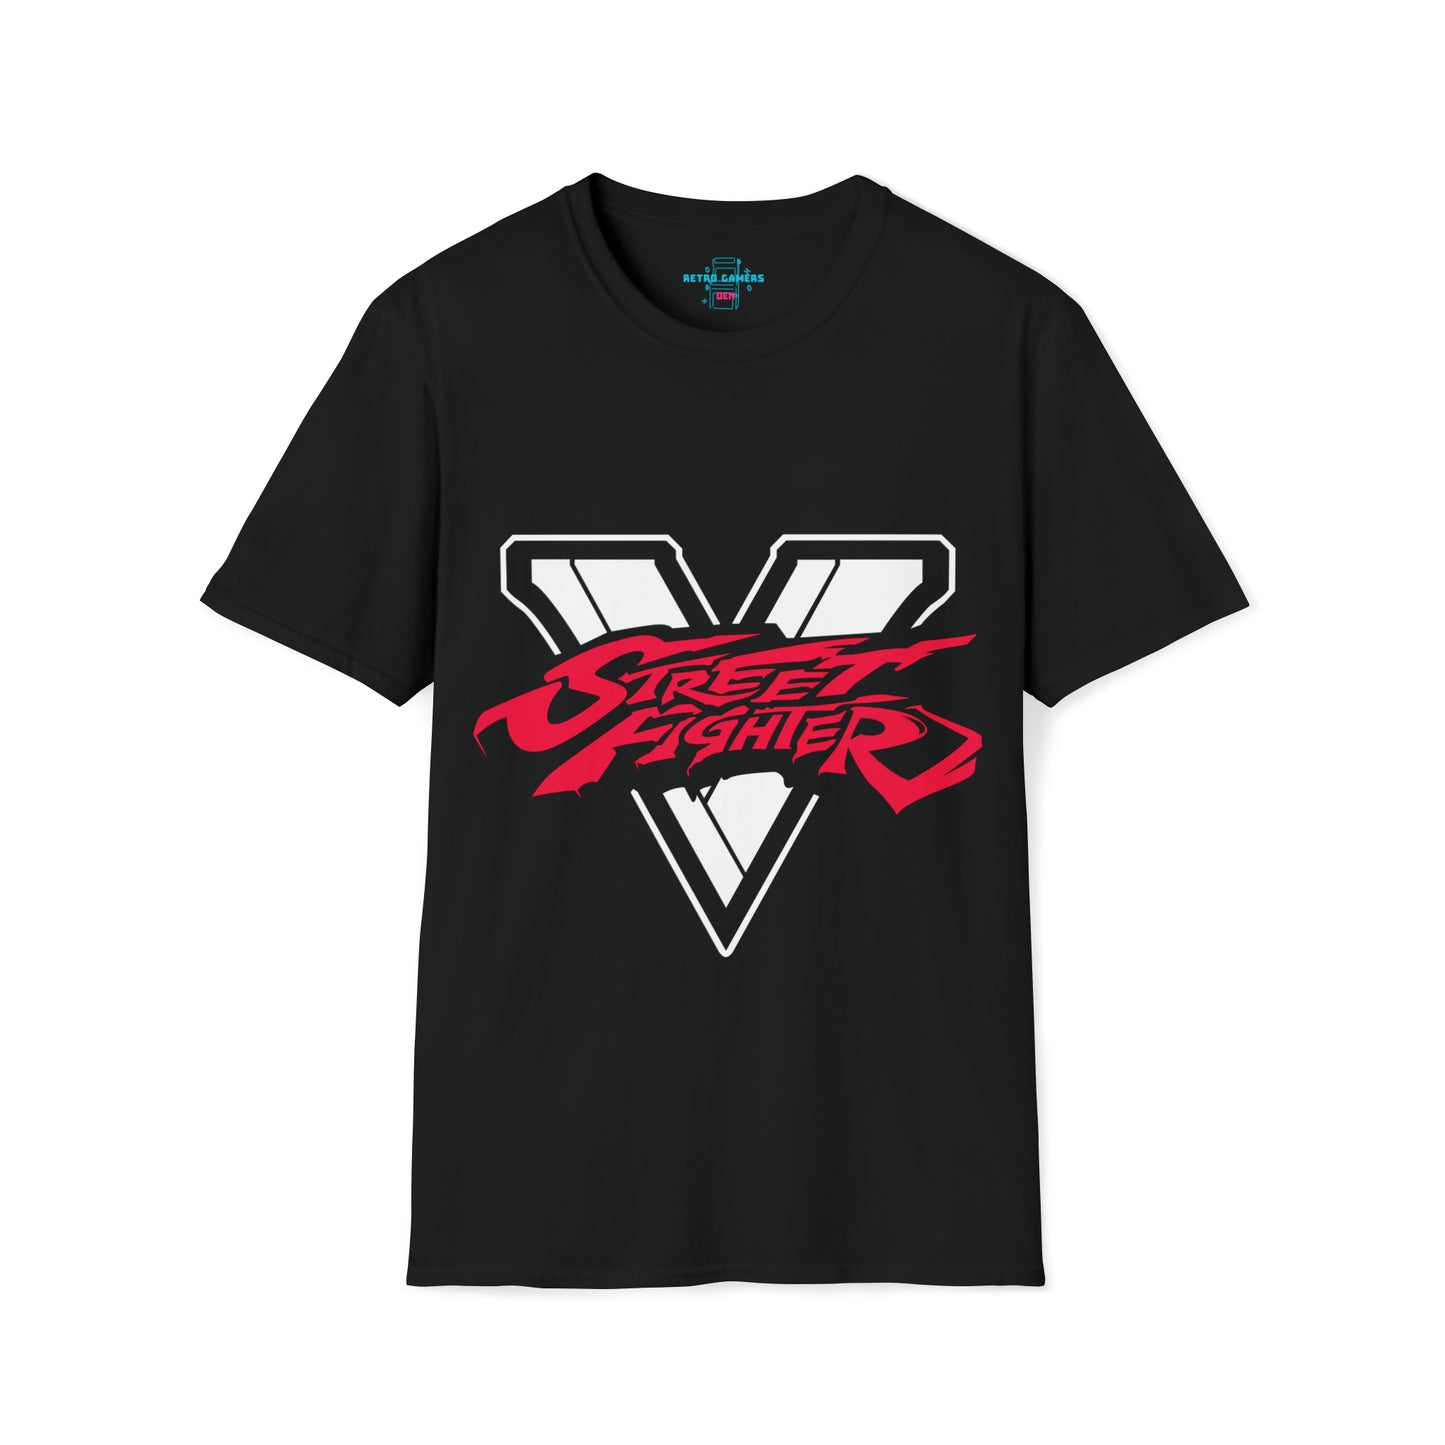 Camiseta unisex de estilo suave de Street Fighter